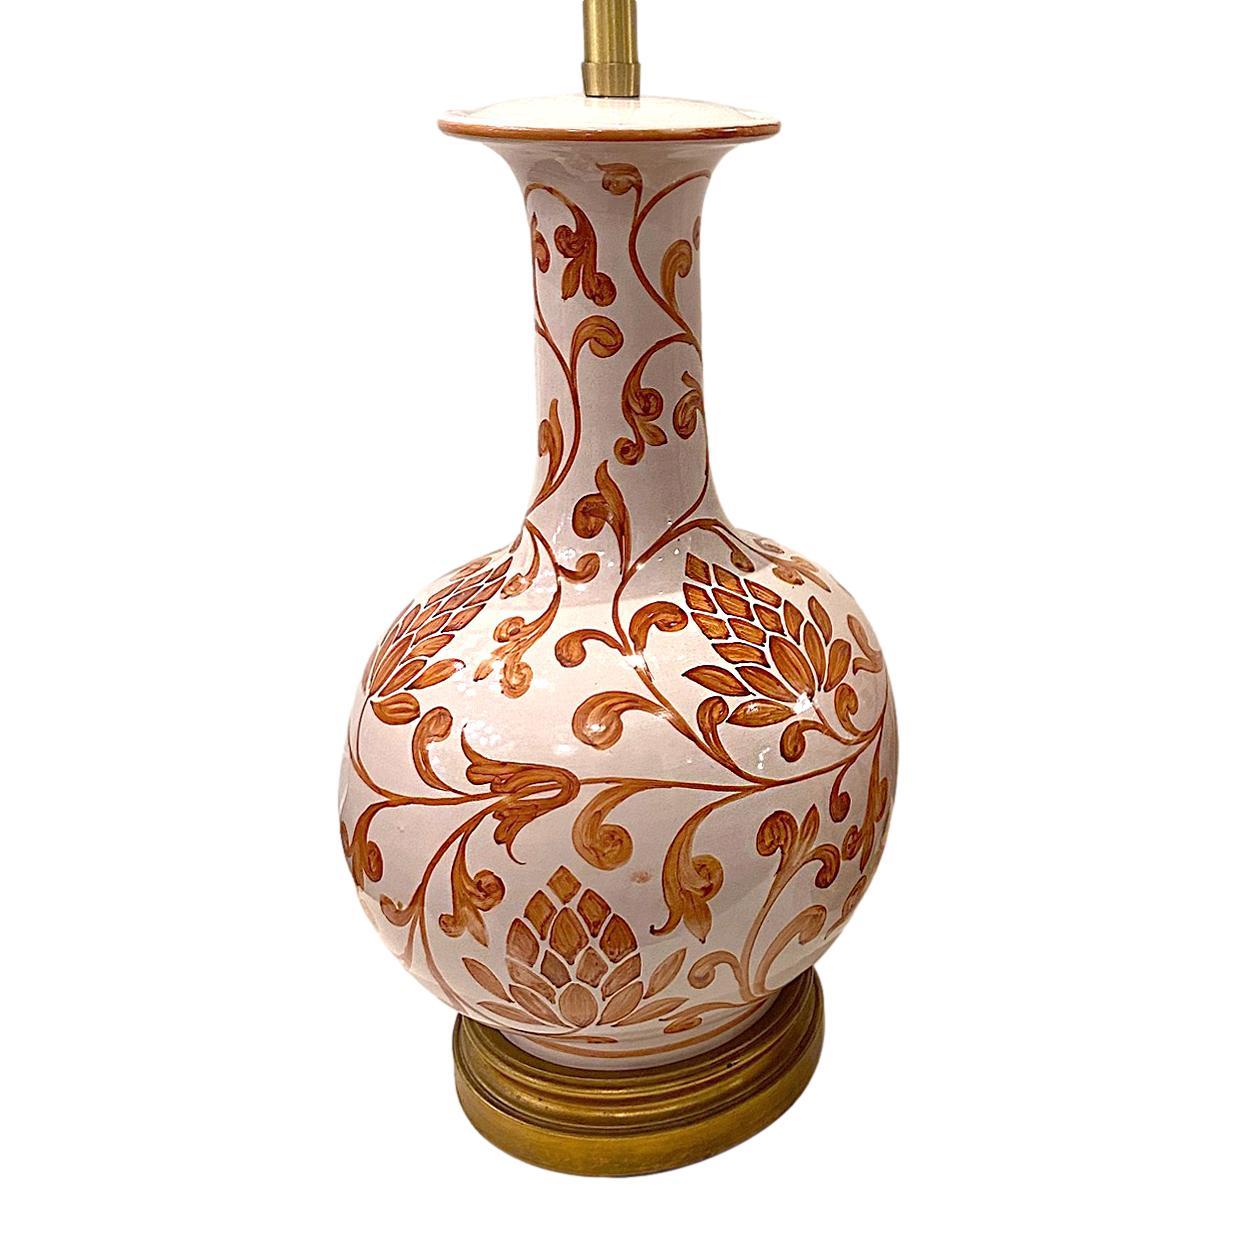 Lampe de table en porcelaine italienne des années 1940, décorée de feuillages peints à la main.

Mesures :
Hauteur du corps : 20.5
Hauteur jusqu'à l'appui de l'abat-jour : 32